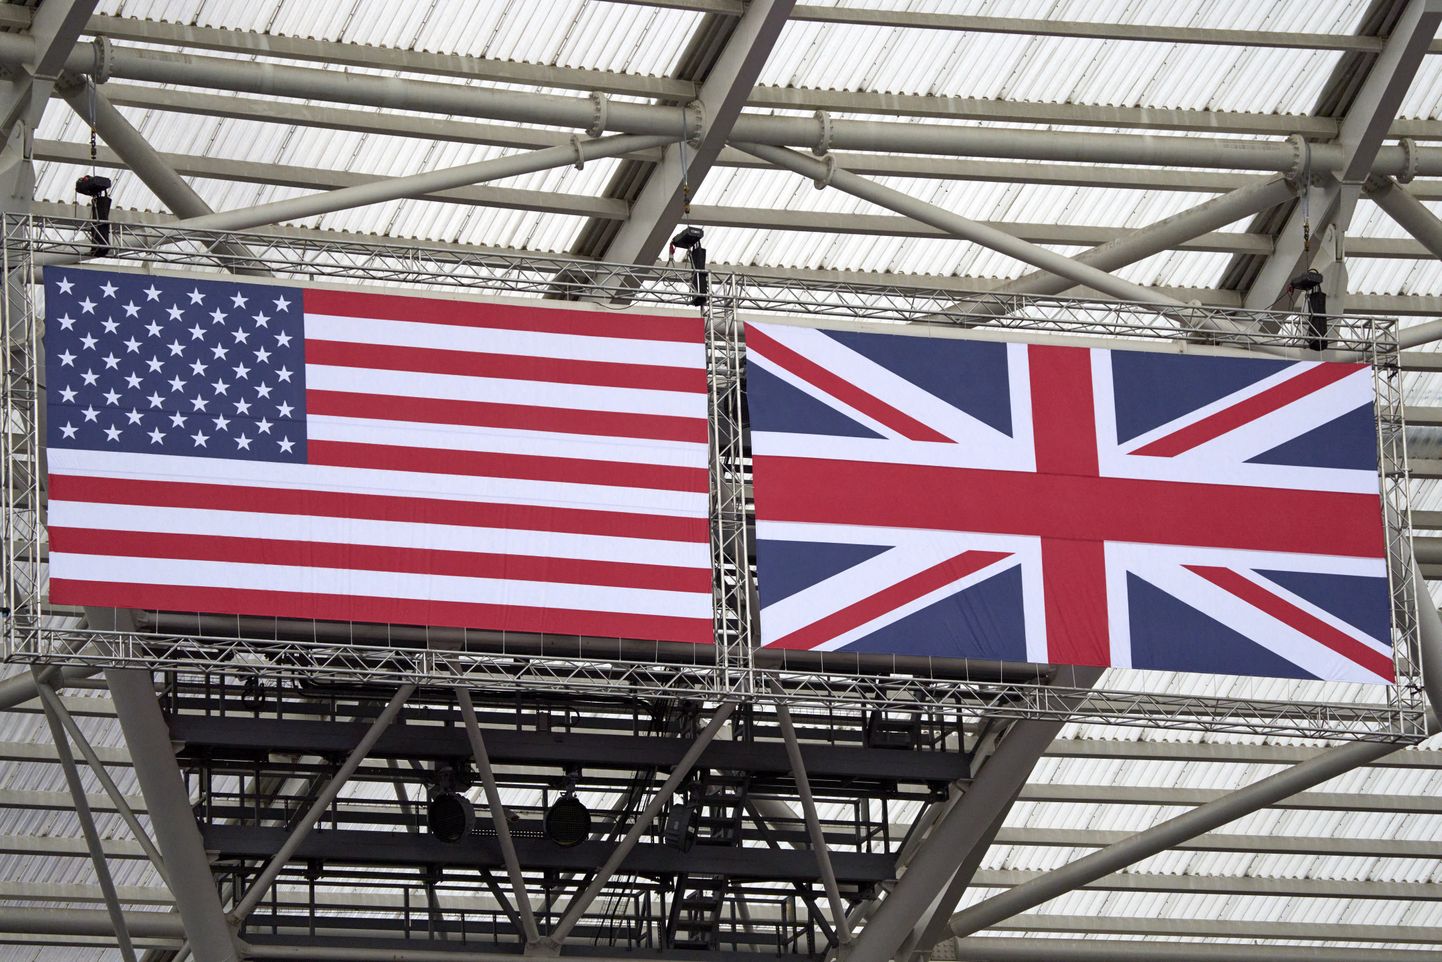 USA and Ühendkuningriigi lipud.